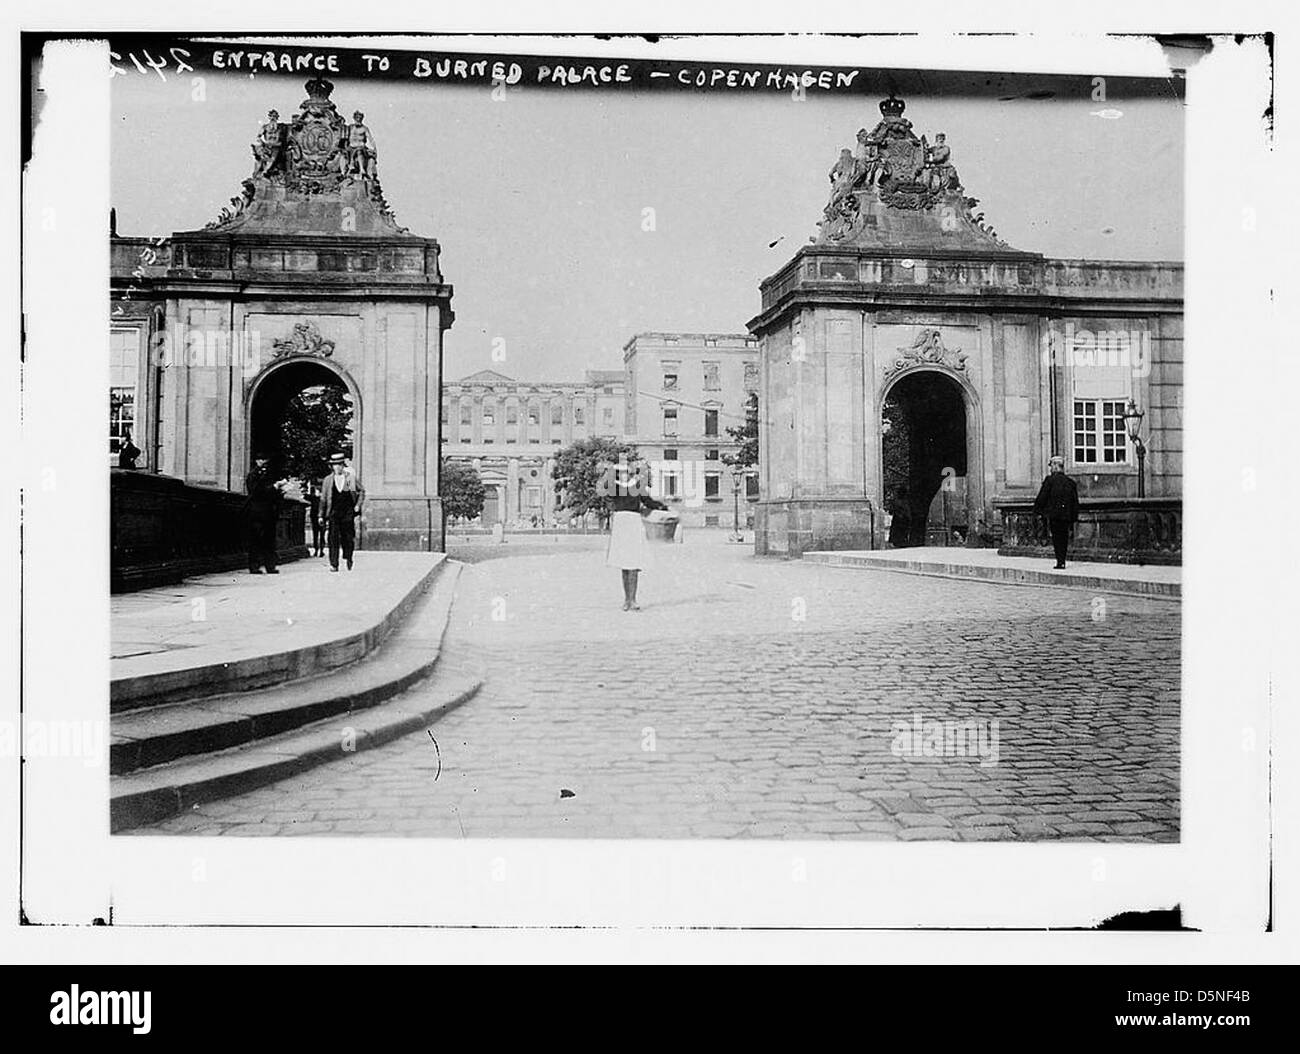 Entrance to burned palace, Copenhagen (LOC) Stock Photo